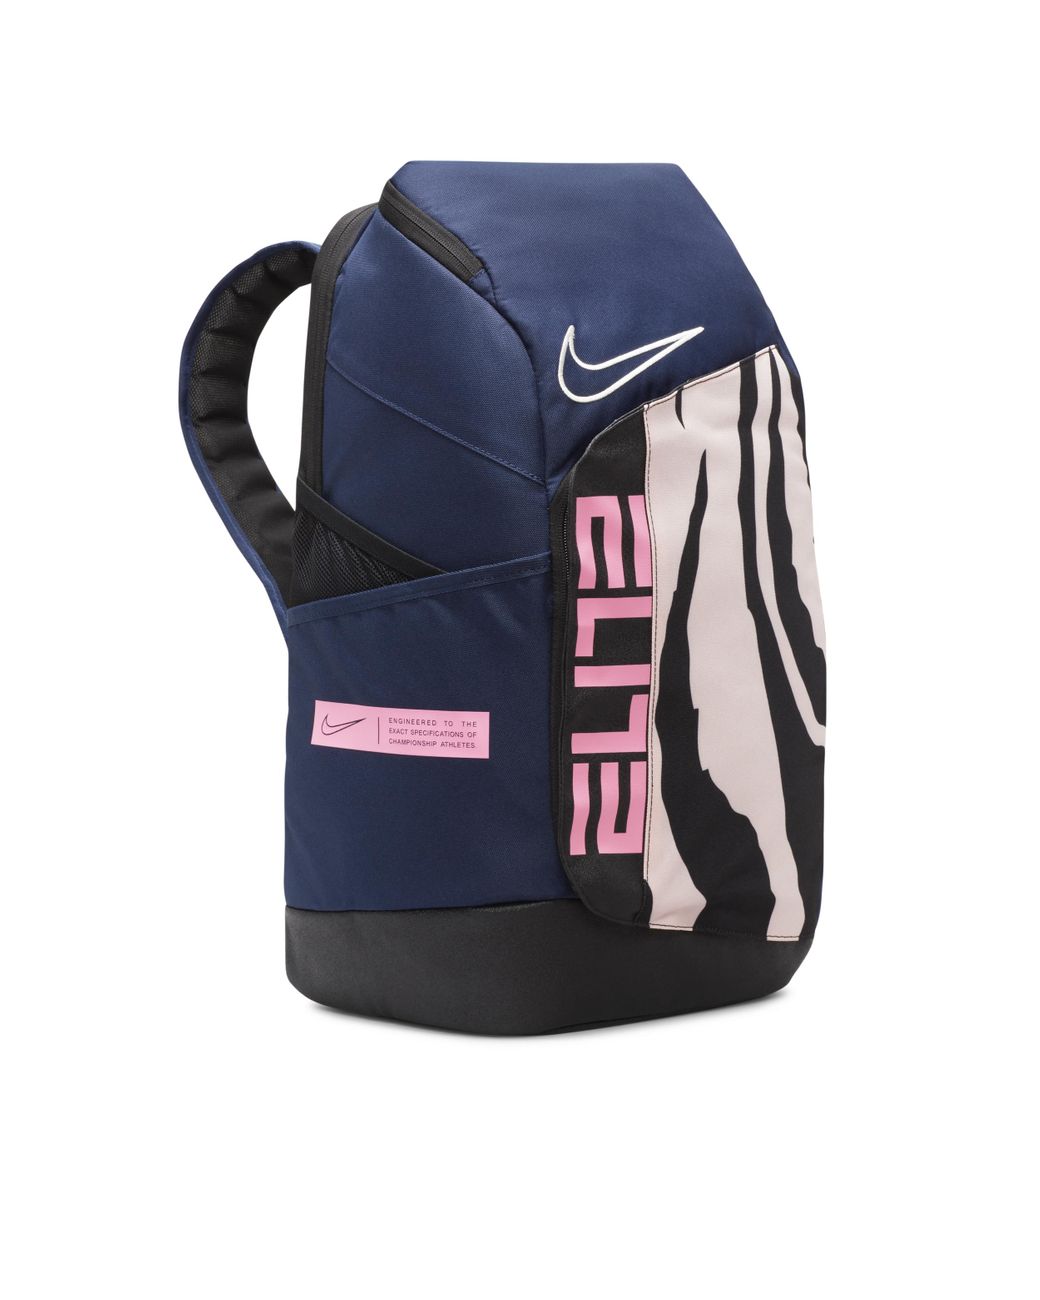 Nike Team USA Elite Pro Olympic Basketball Backpack India | Ubuy